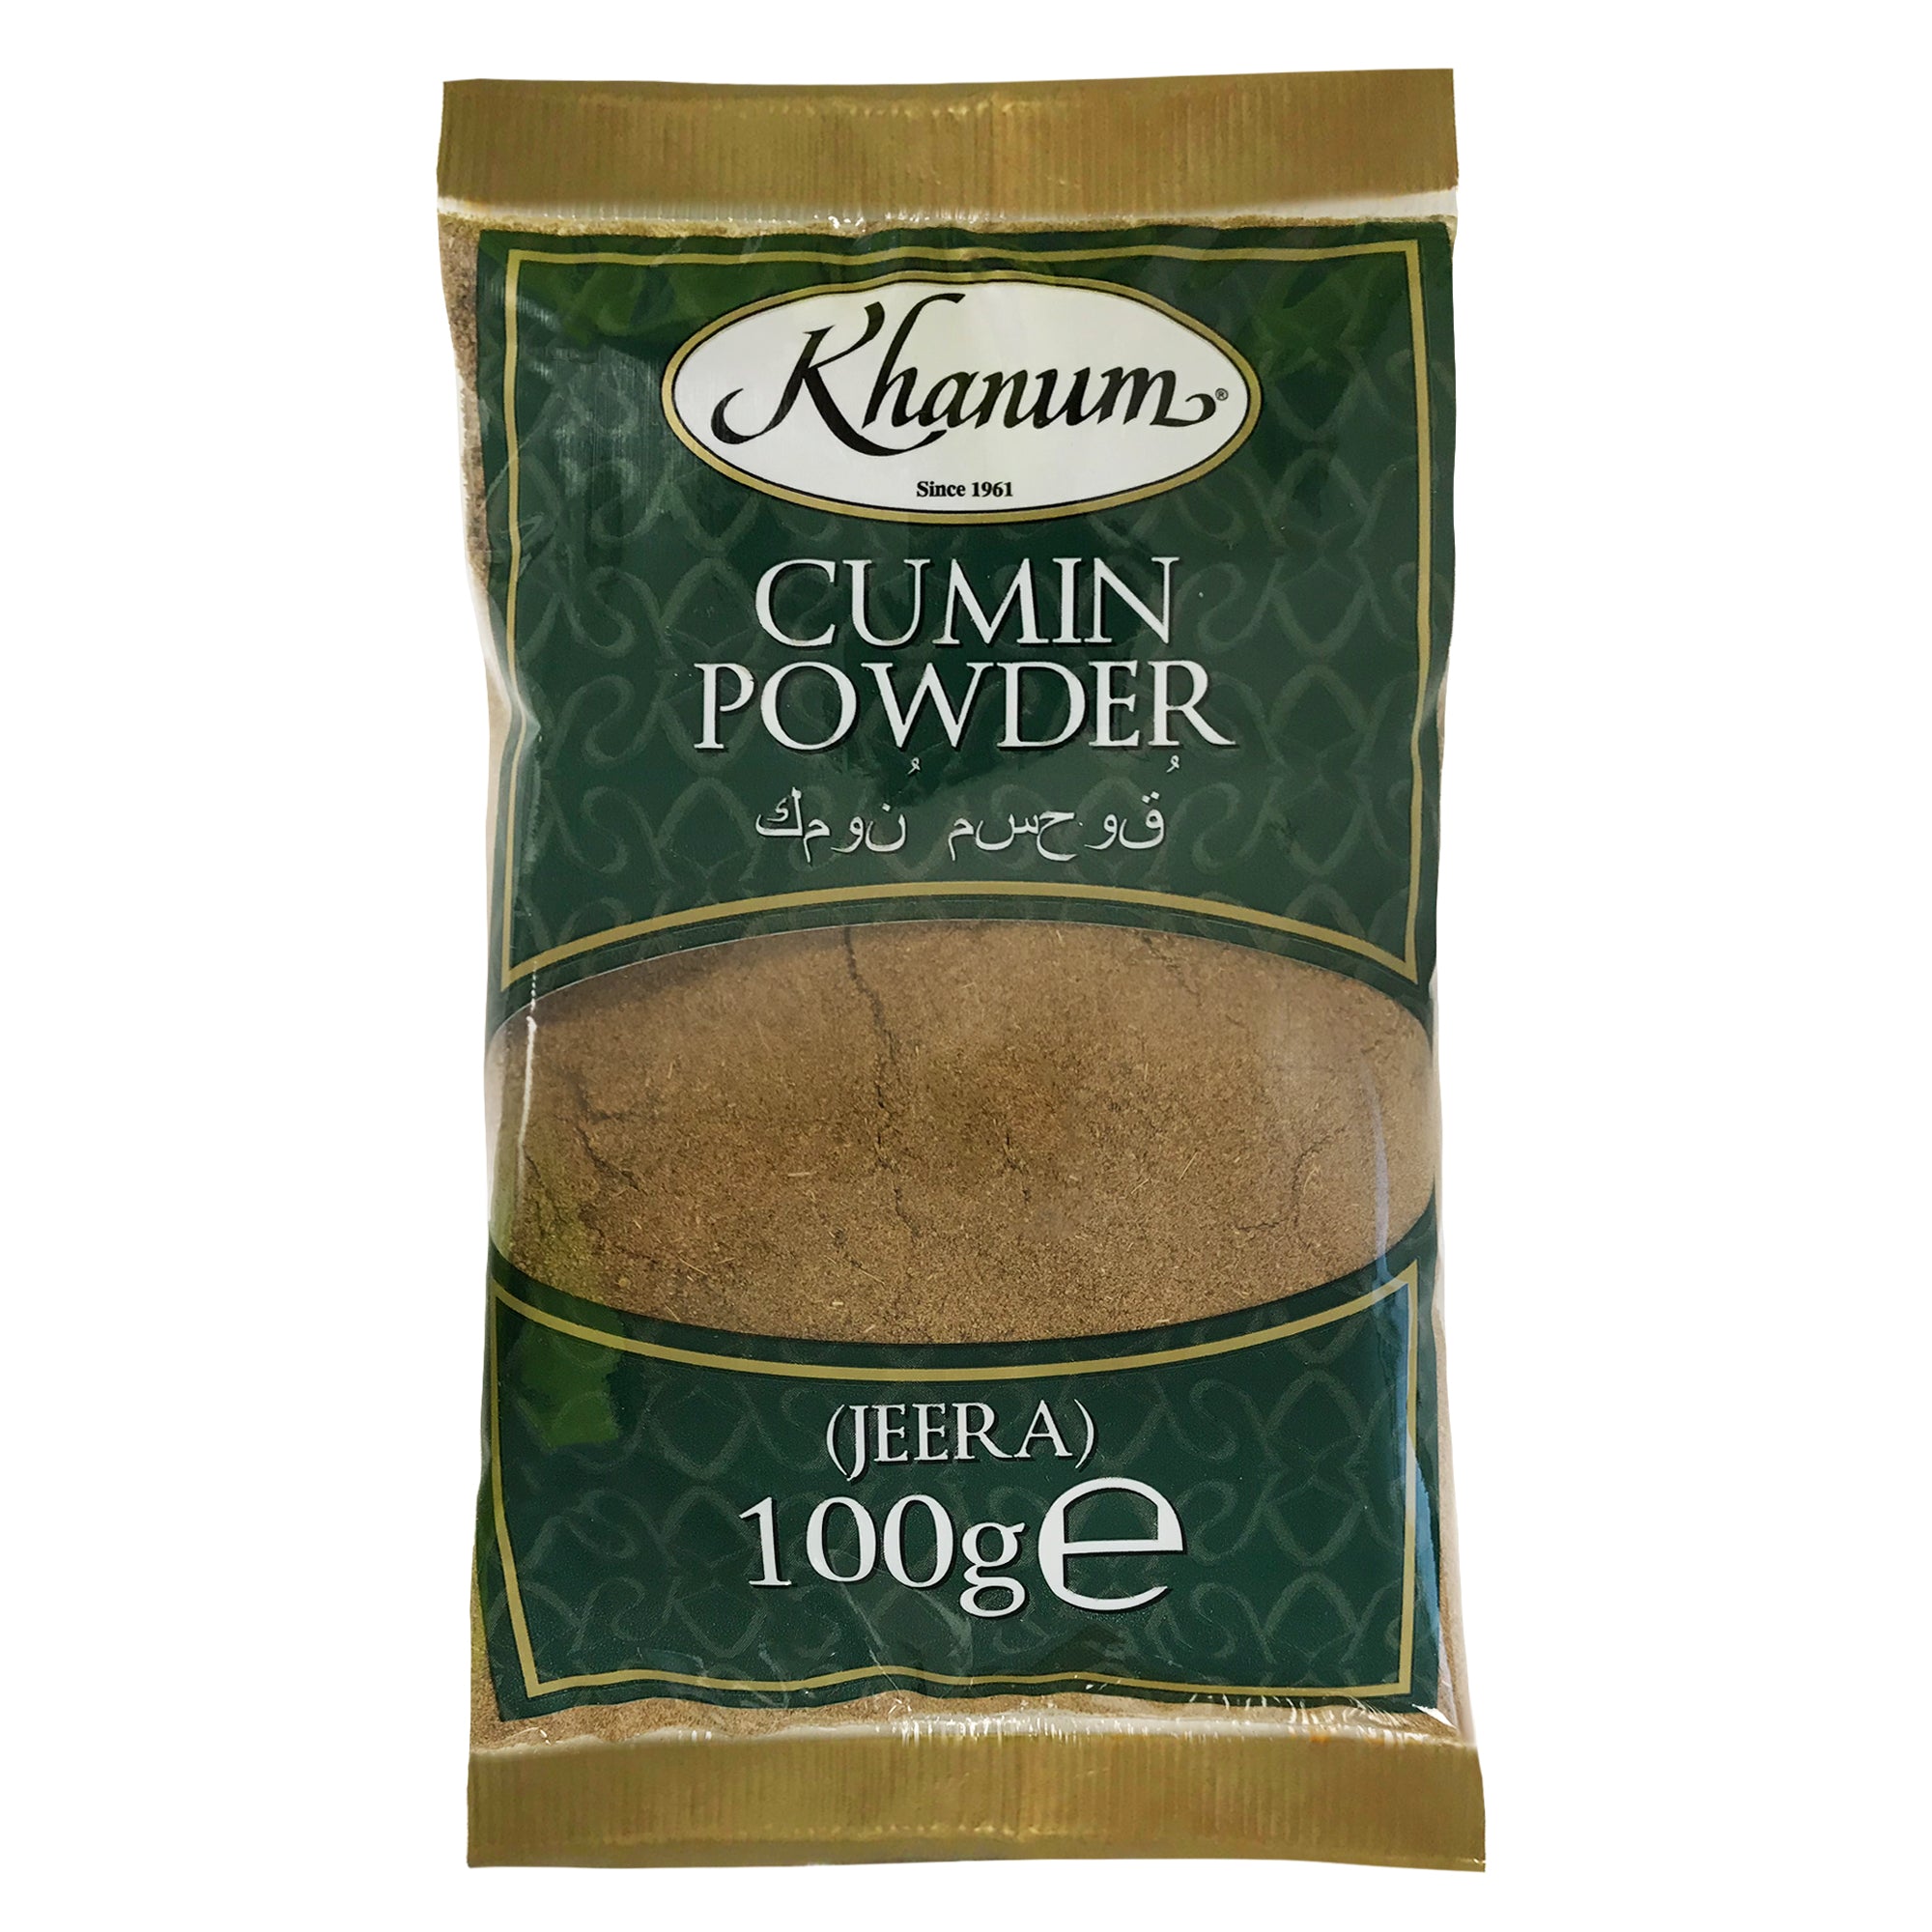 Khanum Cumin Powder (Jeera) 20x100g